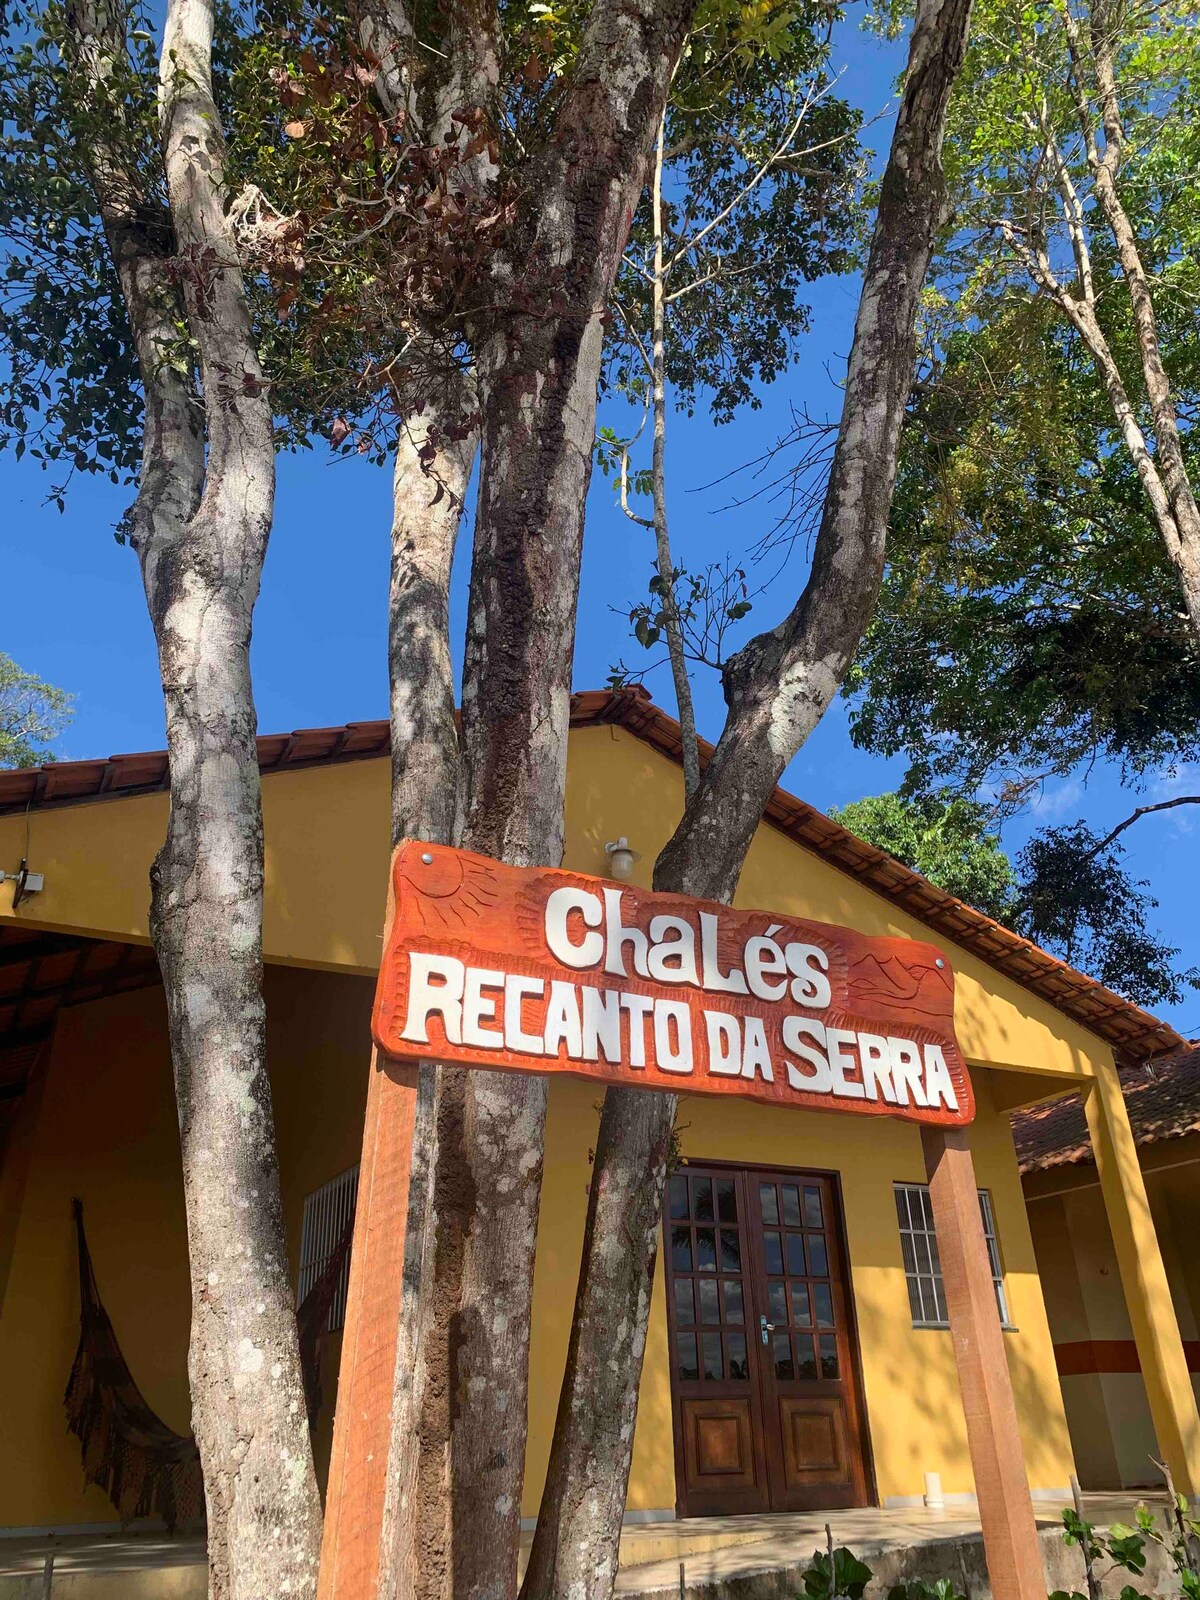 Chalé Recanto da Serra